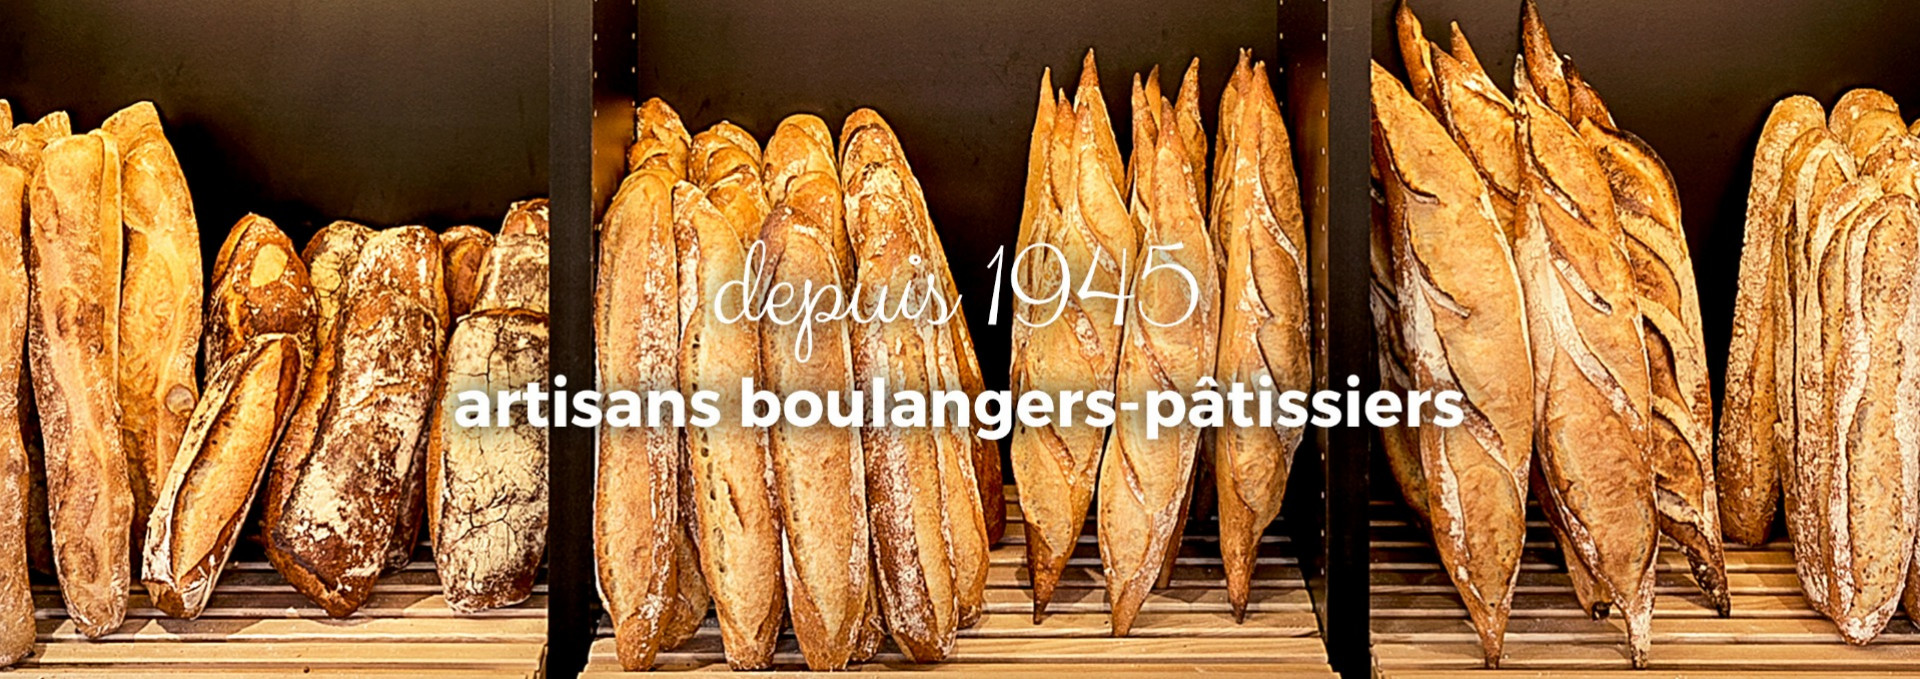 Depuis 1945, artisans boulangers-pâtissiers